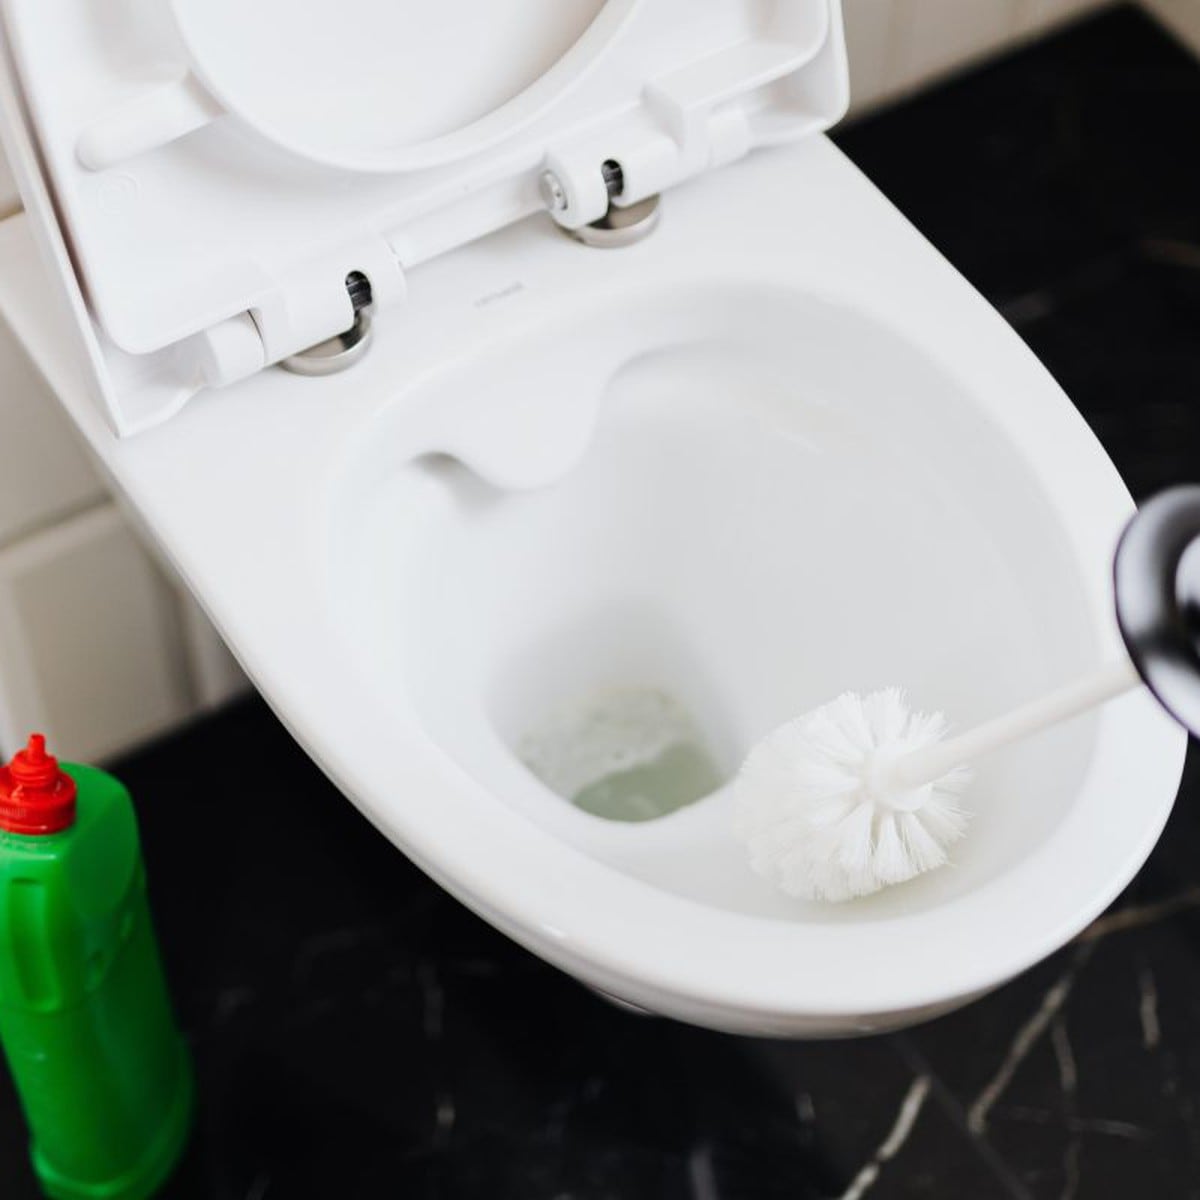 Cómo limpiar tu baño?: Conoce 6 tips y novedades útiles